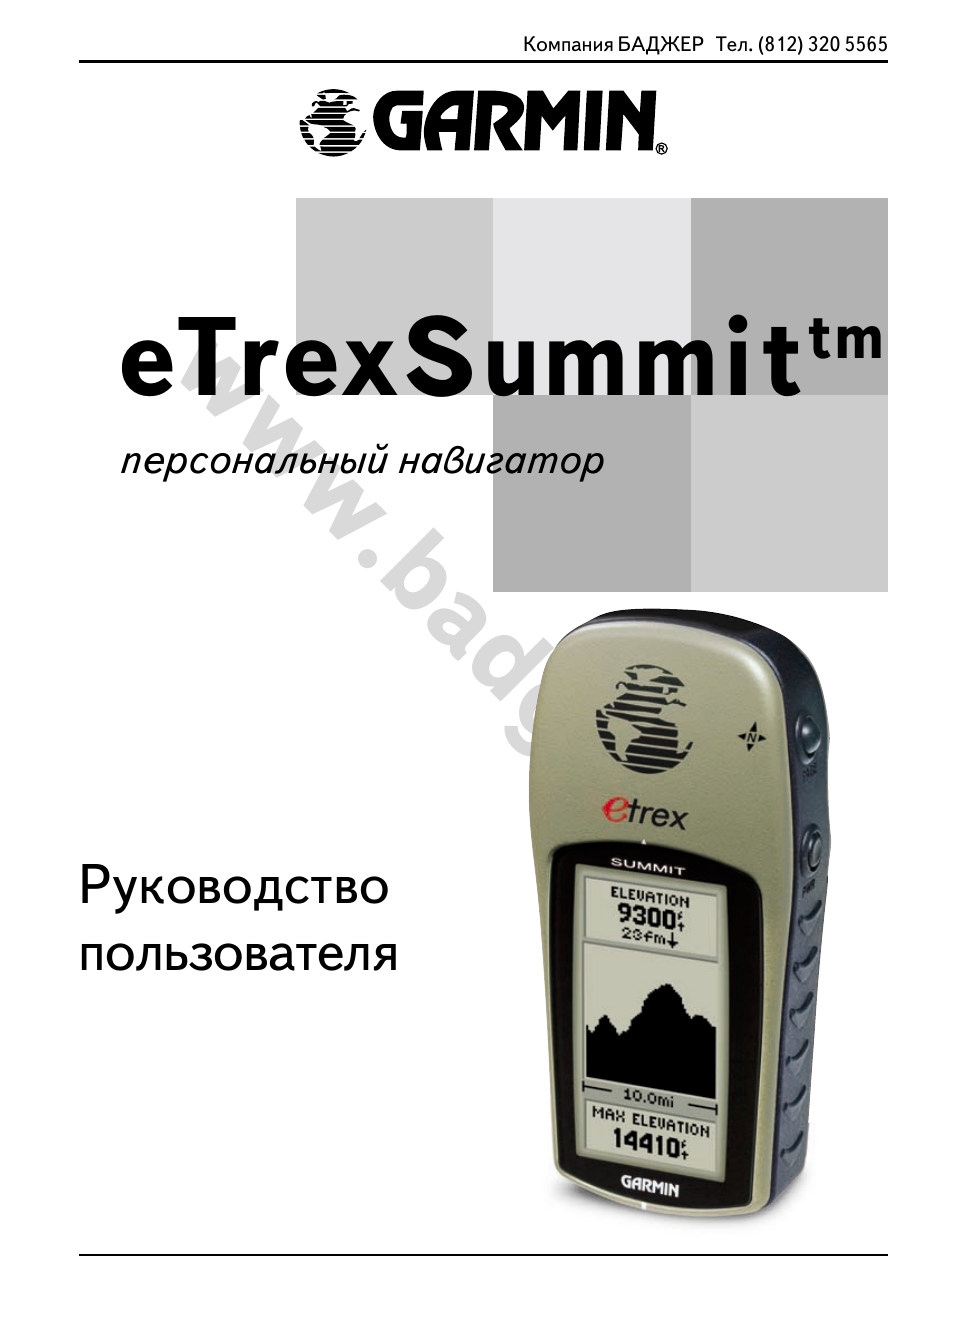 Инструкция по эксплуатации Garmin eTrex Summit | 68 страниц